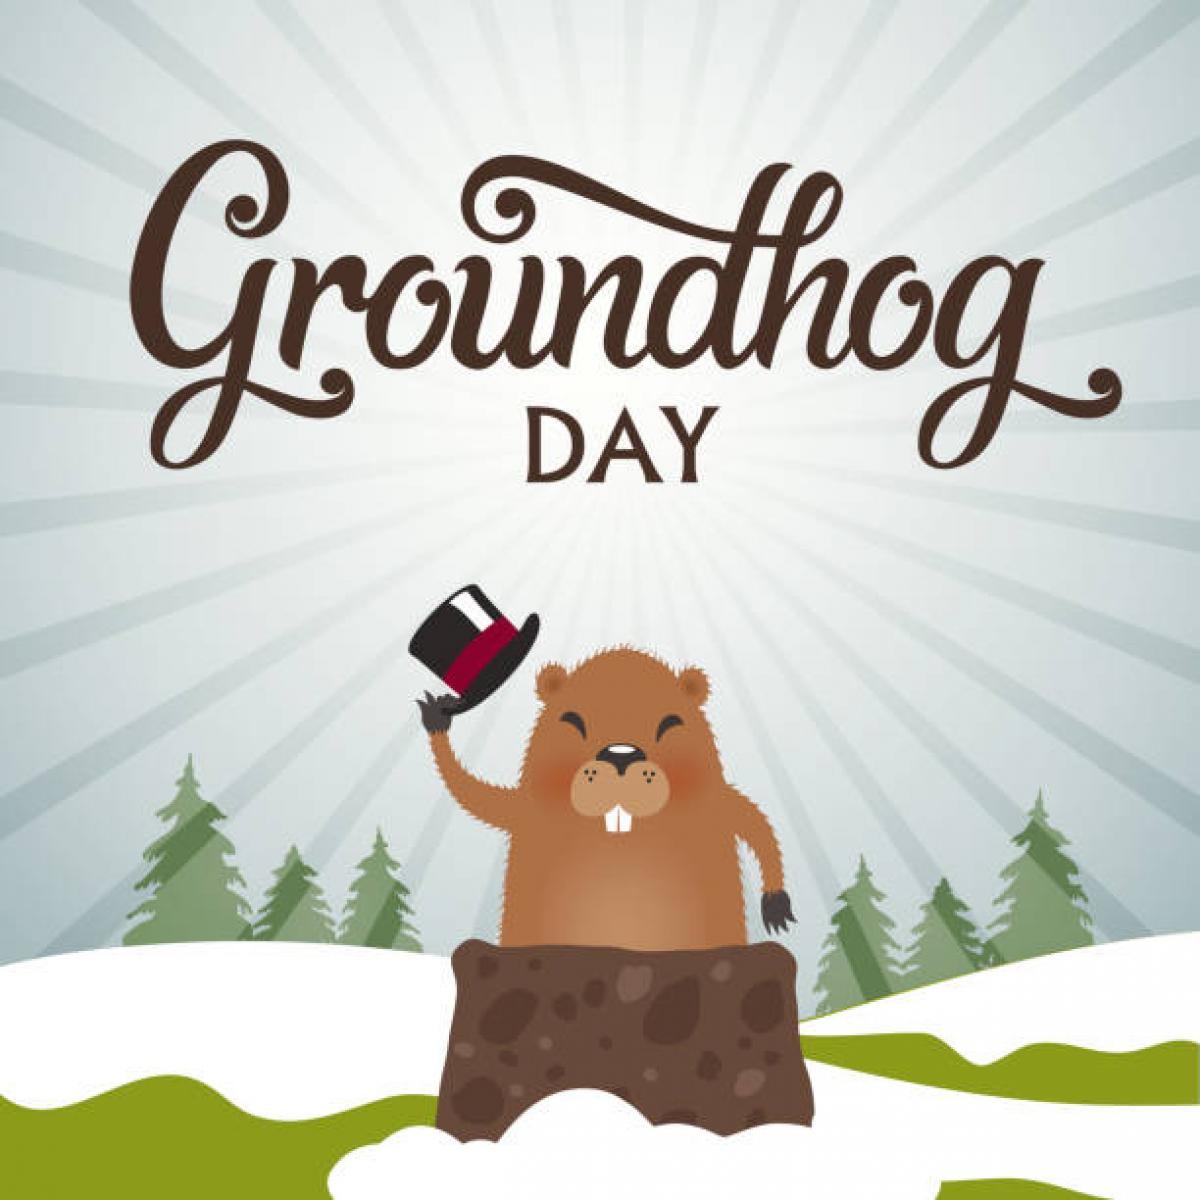 oklahoma, grove, groundhog